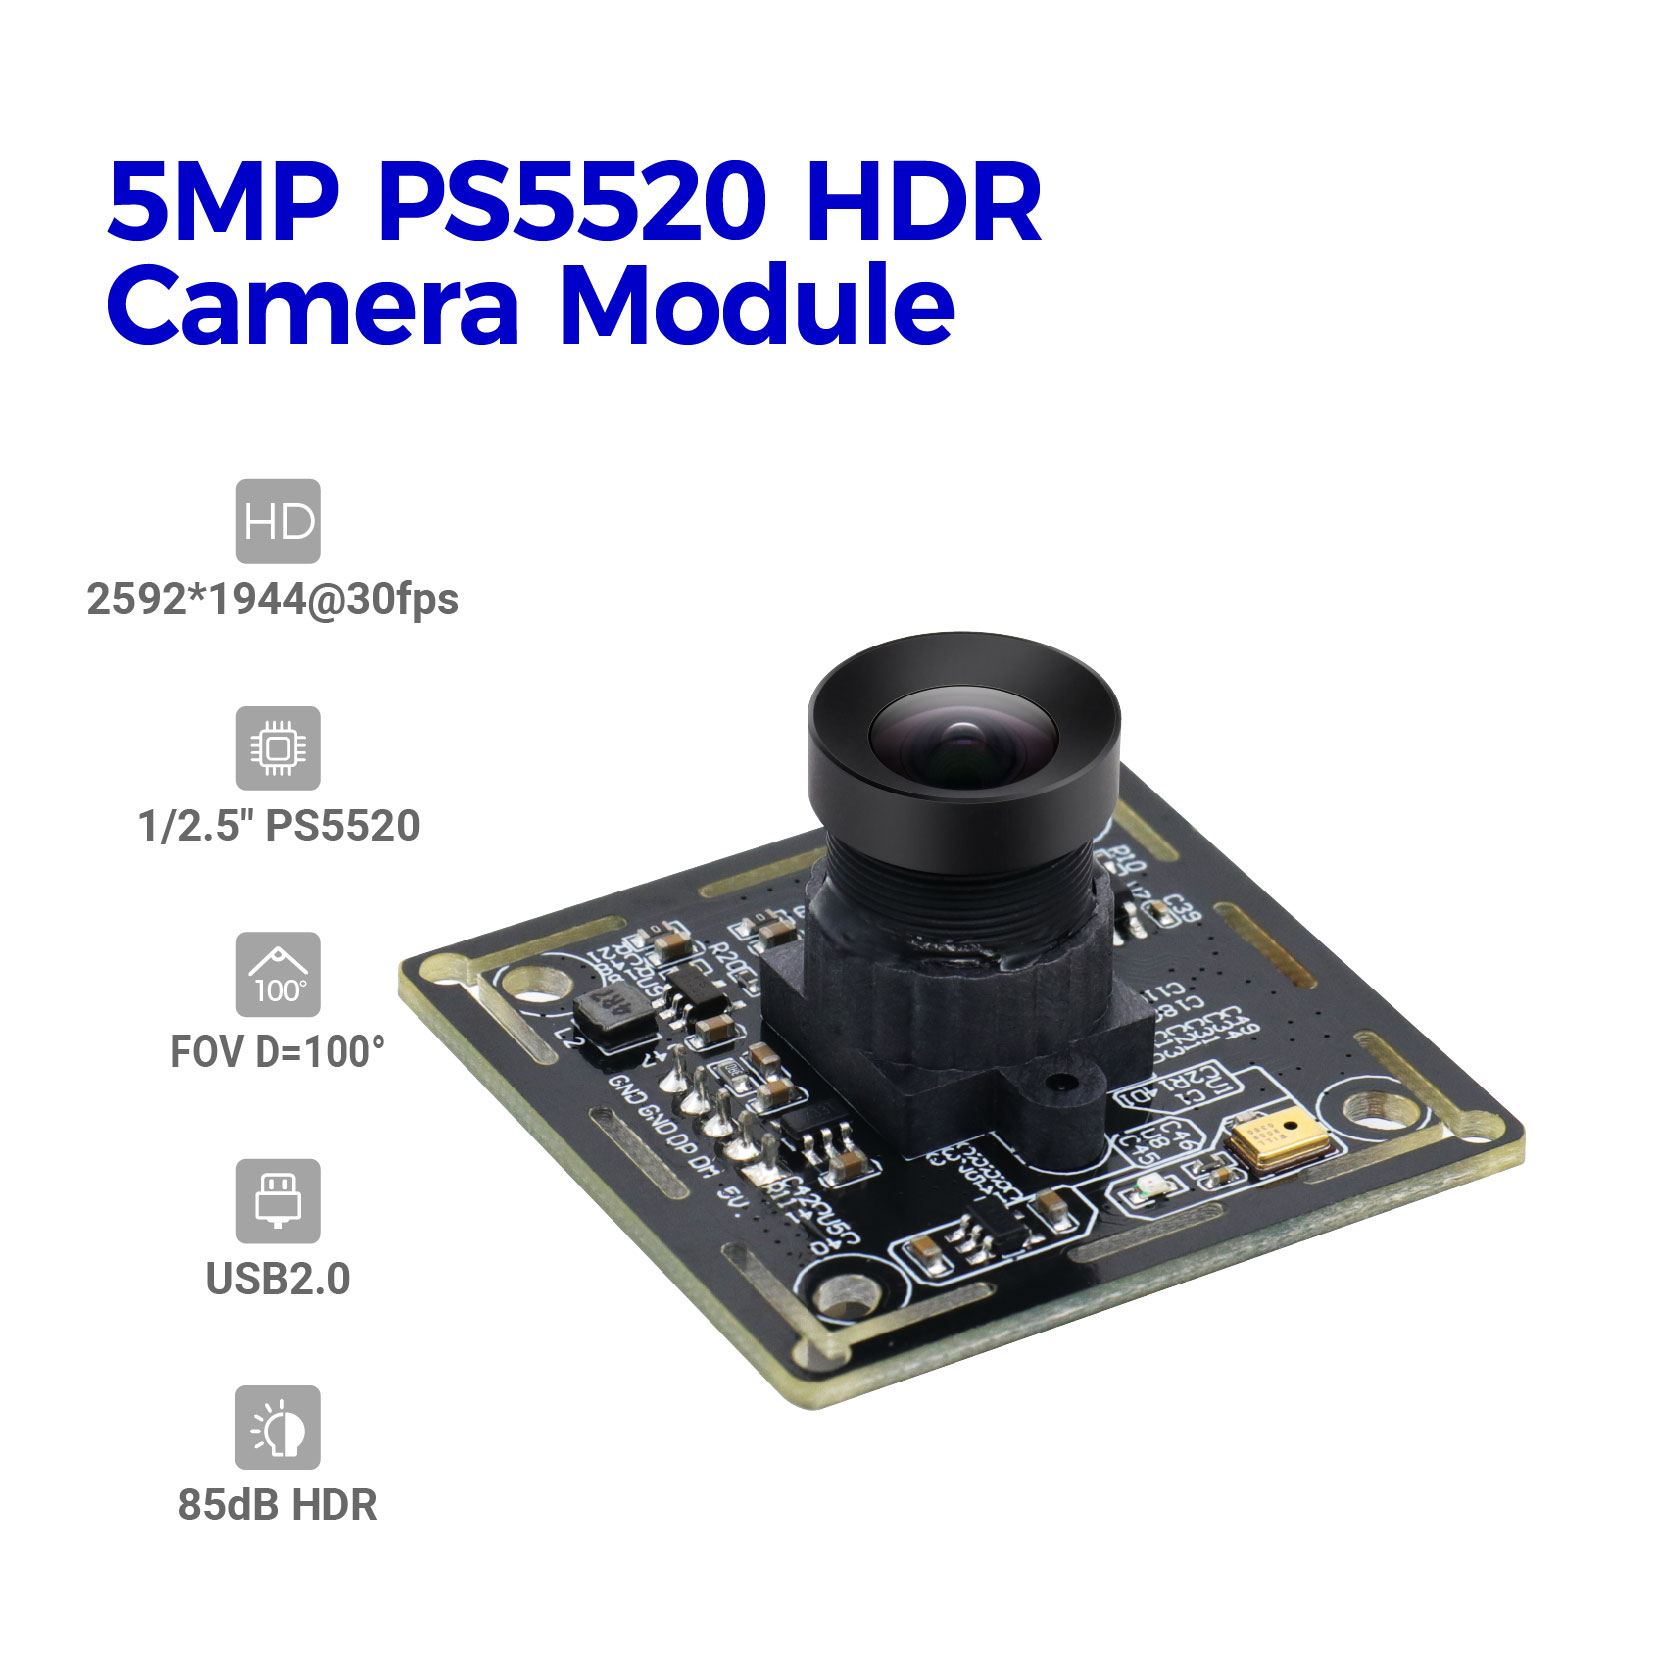 Tilpasset højkvalitets 5MP PS5520 HDR-kameramodul